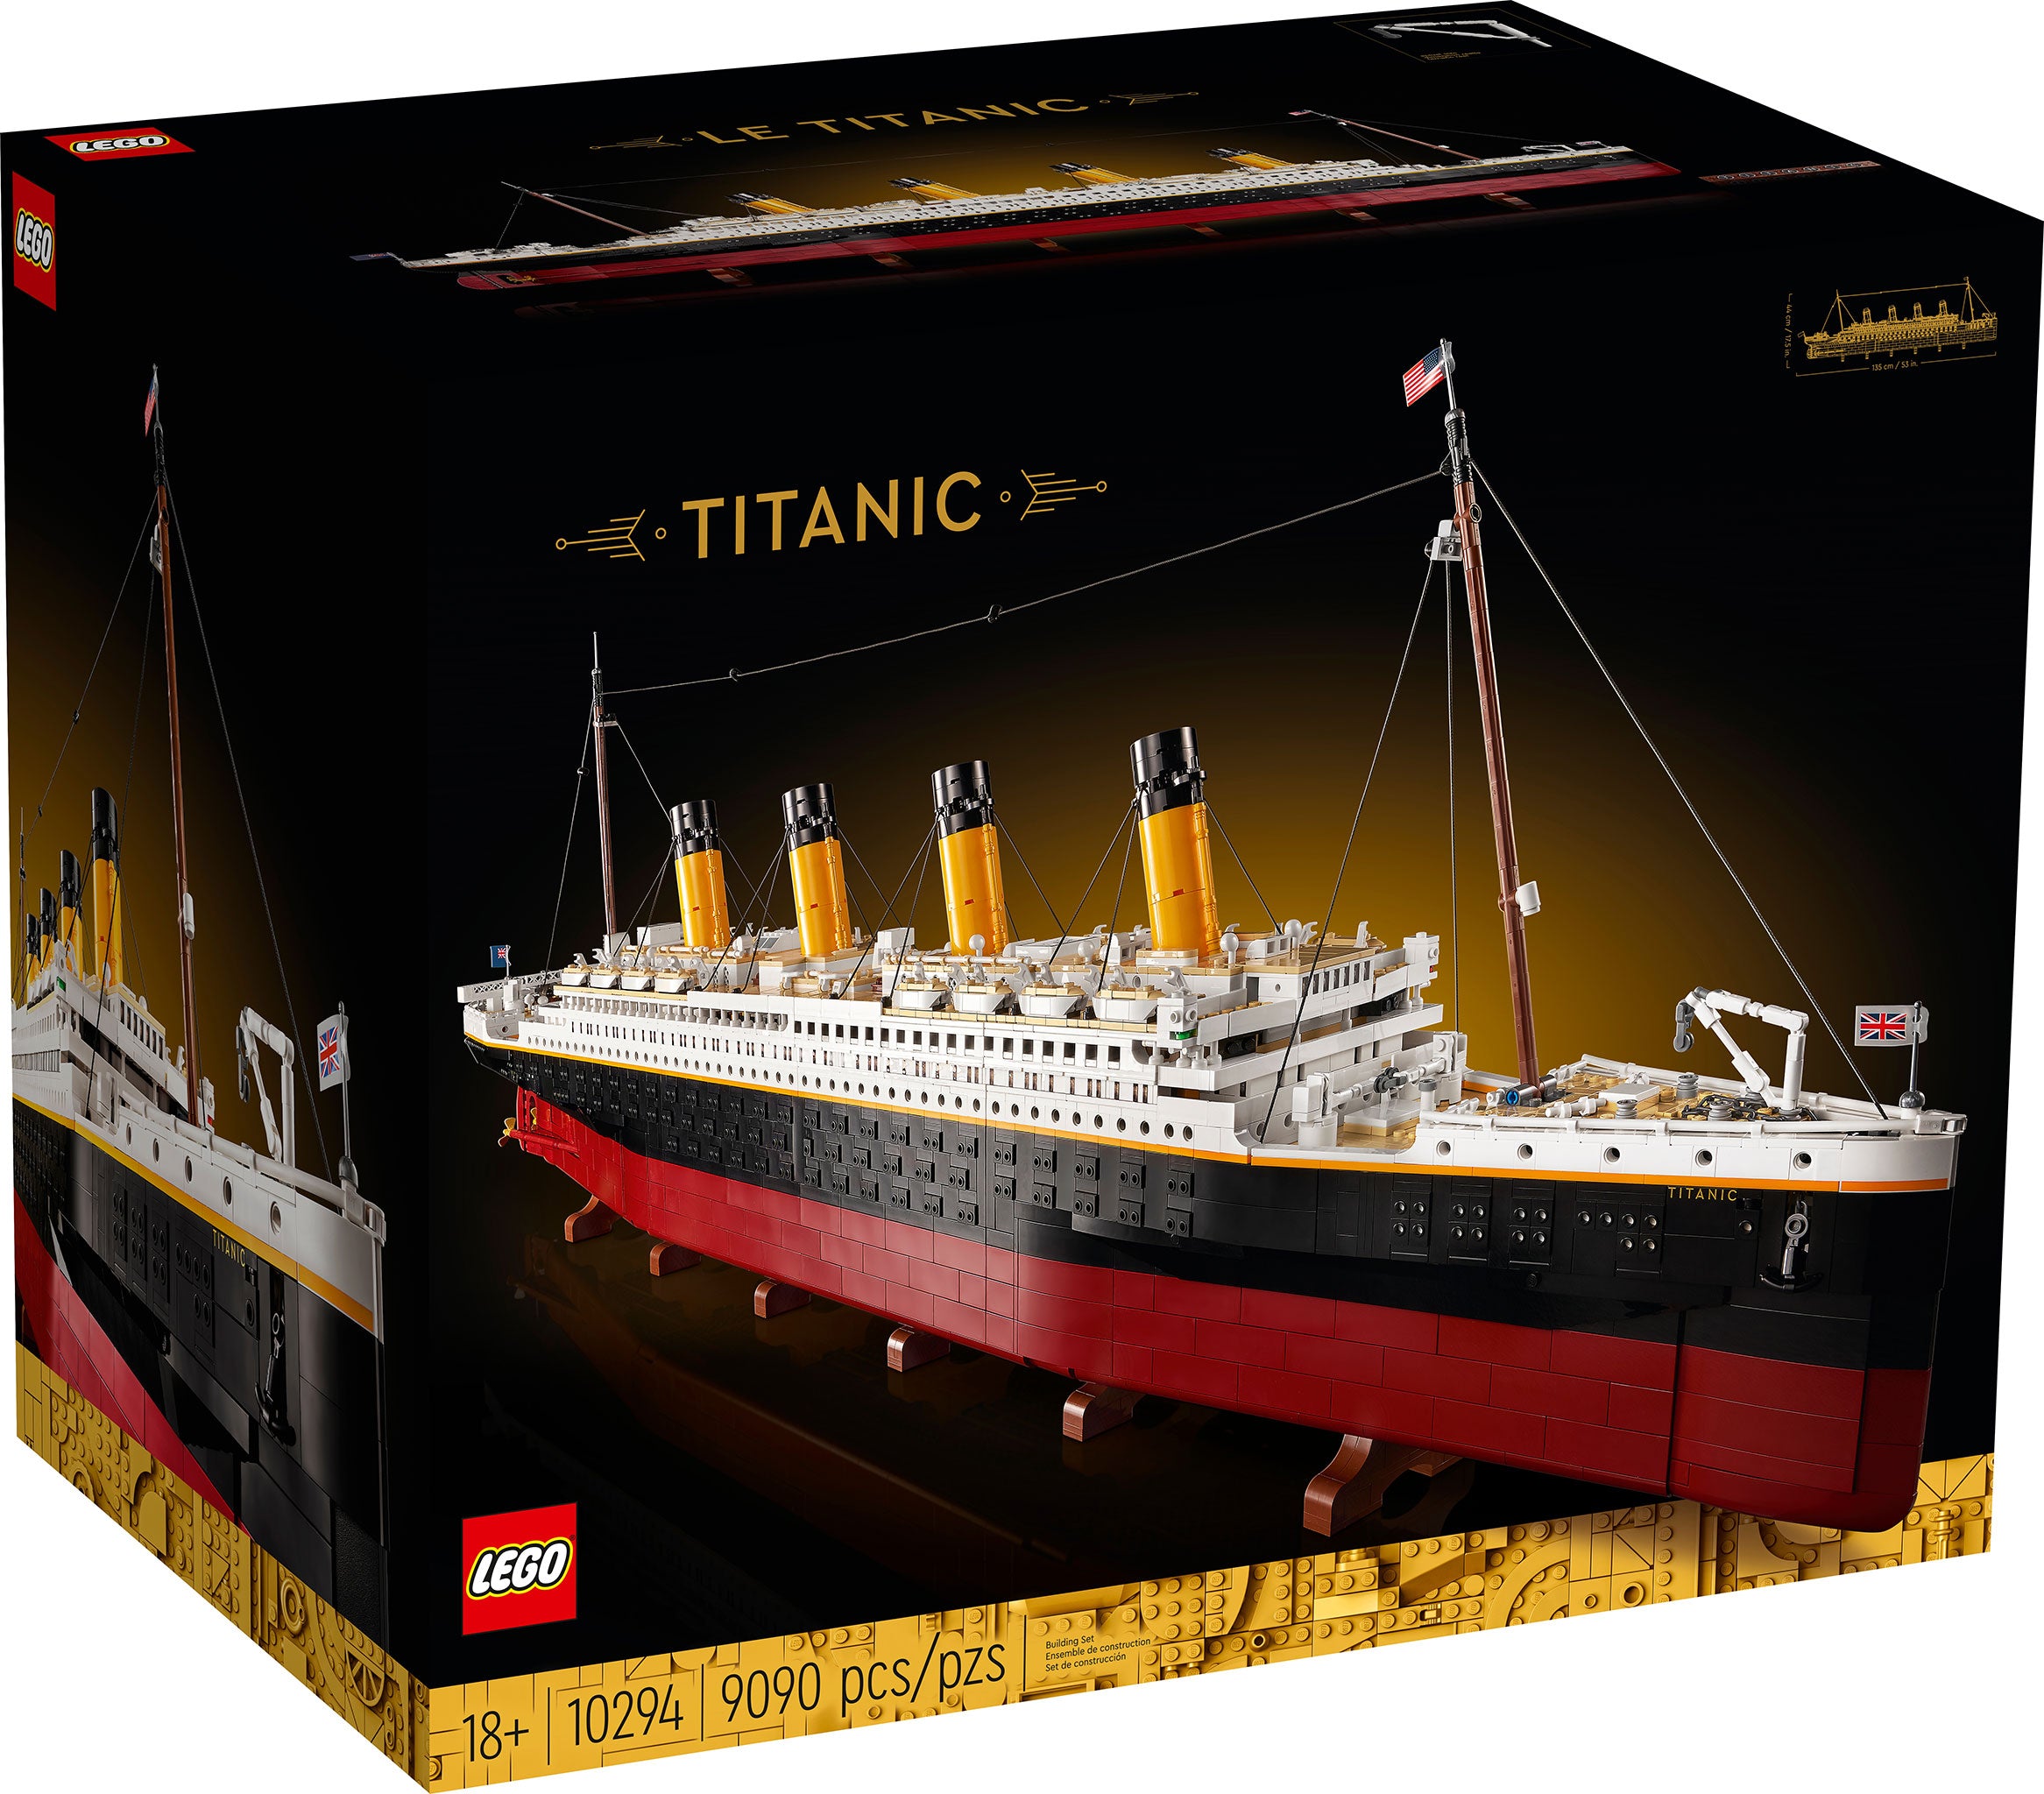 LEGO Creator Expert Titanic (10294) - im GOLDSTIEN.SHOP verfügbar mit Gratisversand ab Schweizer Lager! (5702016914320)